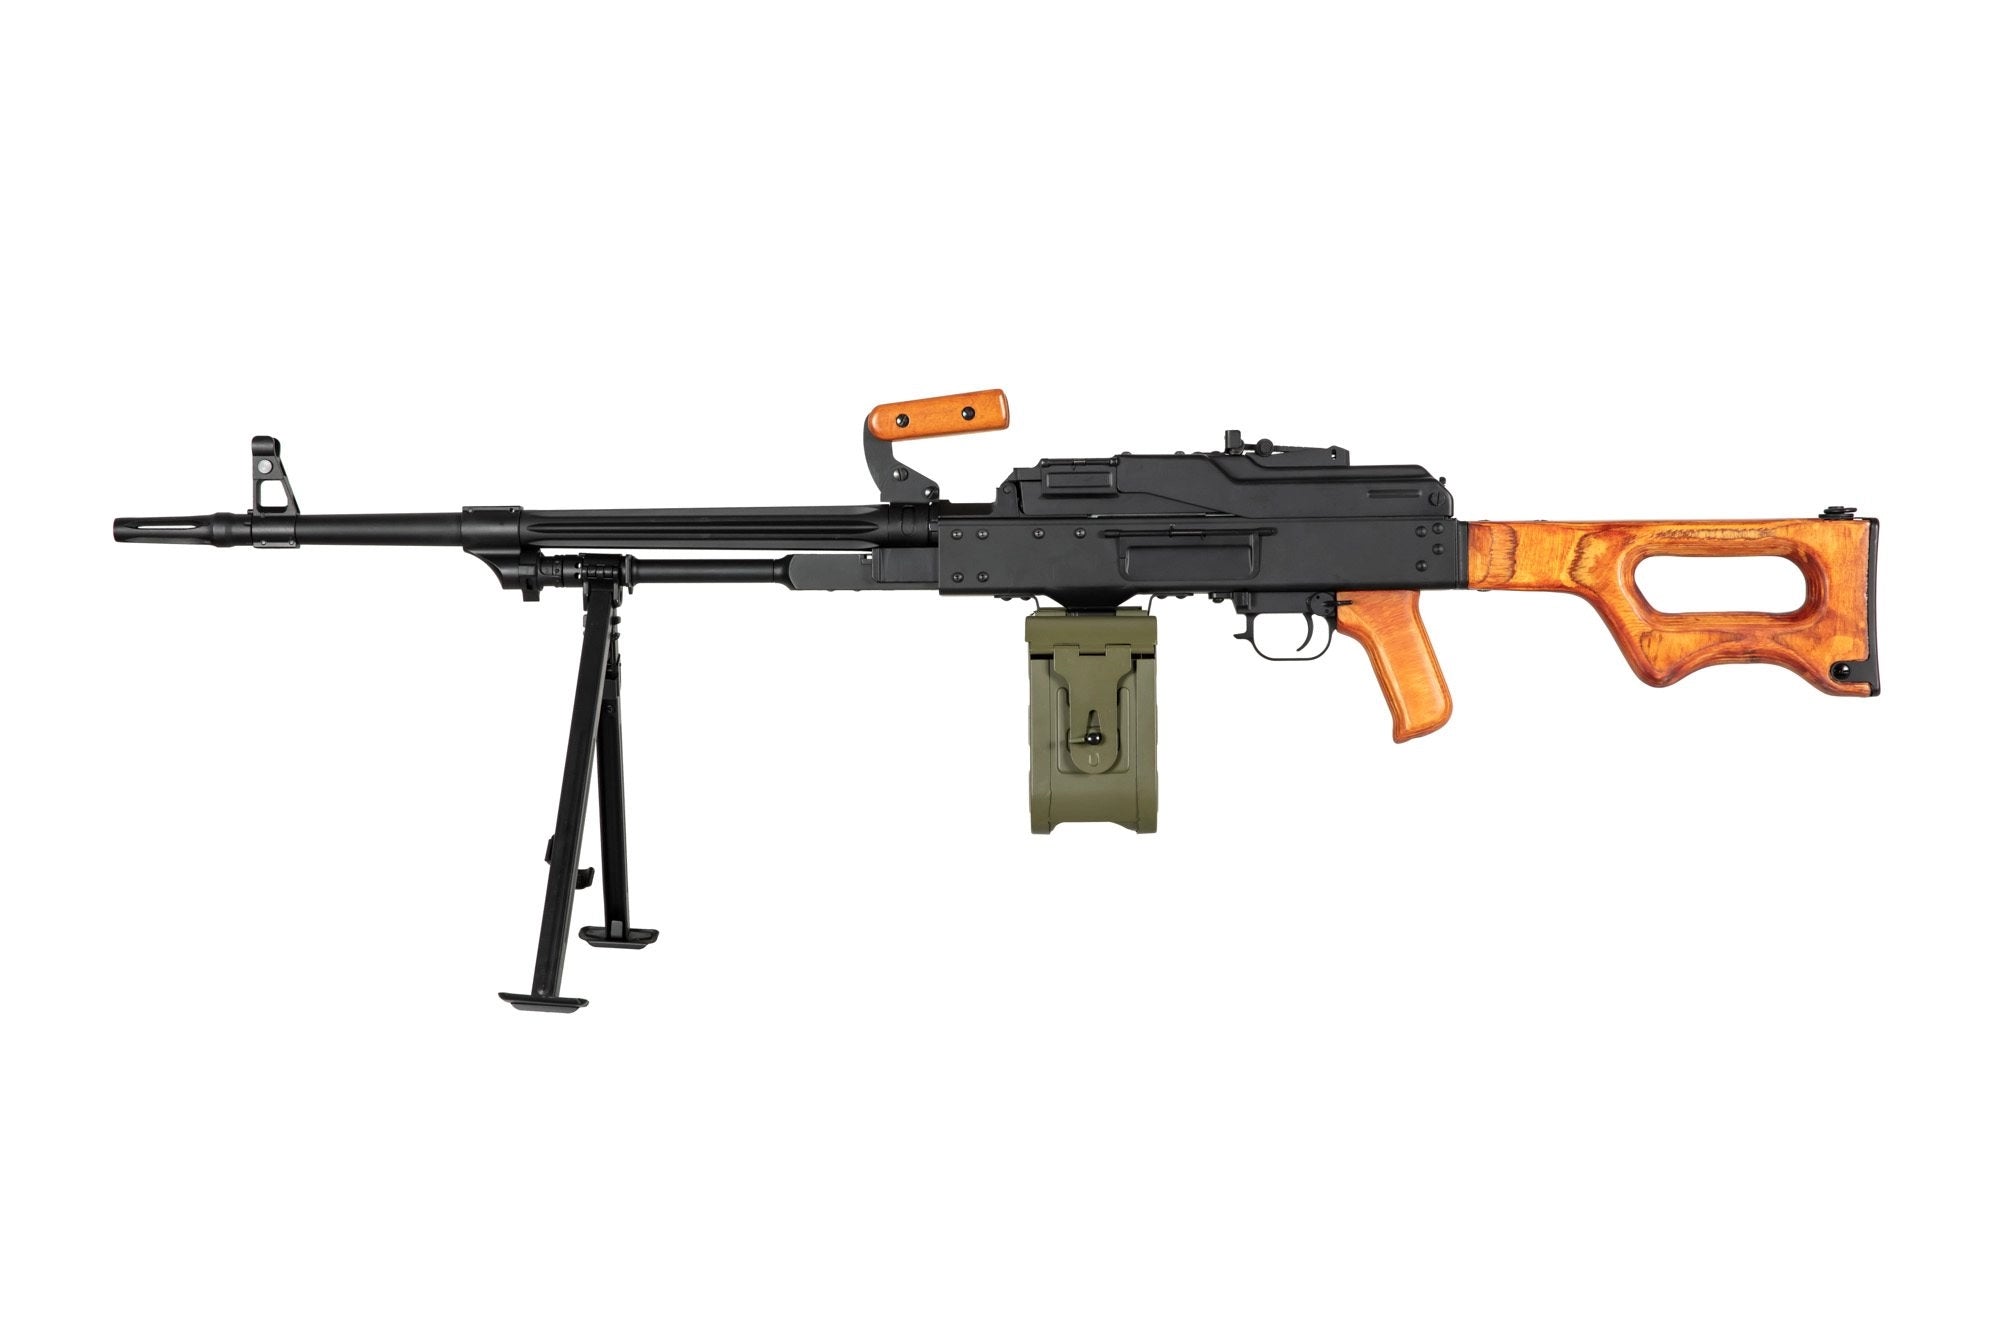 AK-PK Machine Gun Replica with Wooden Elements